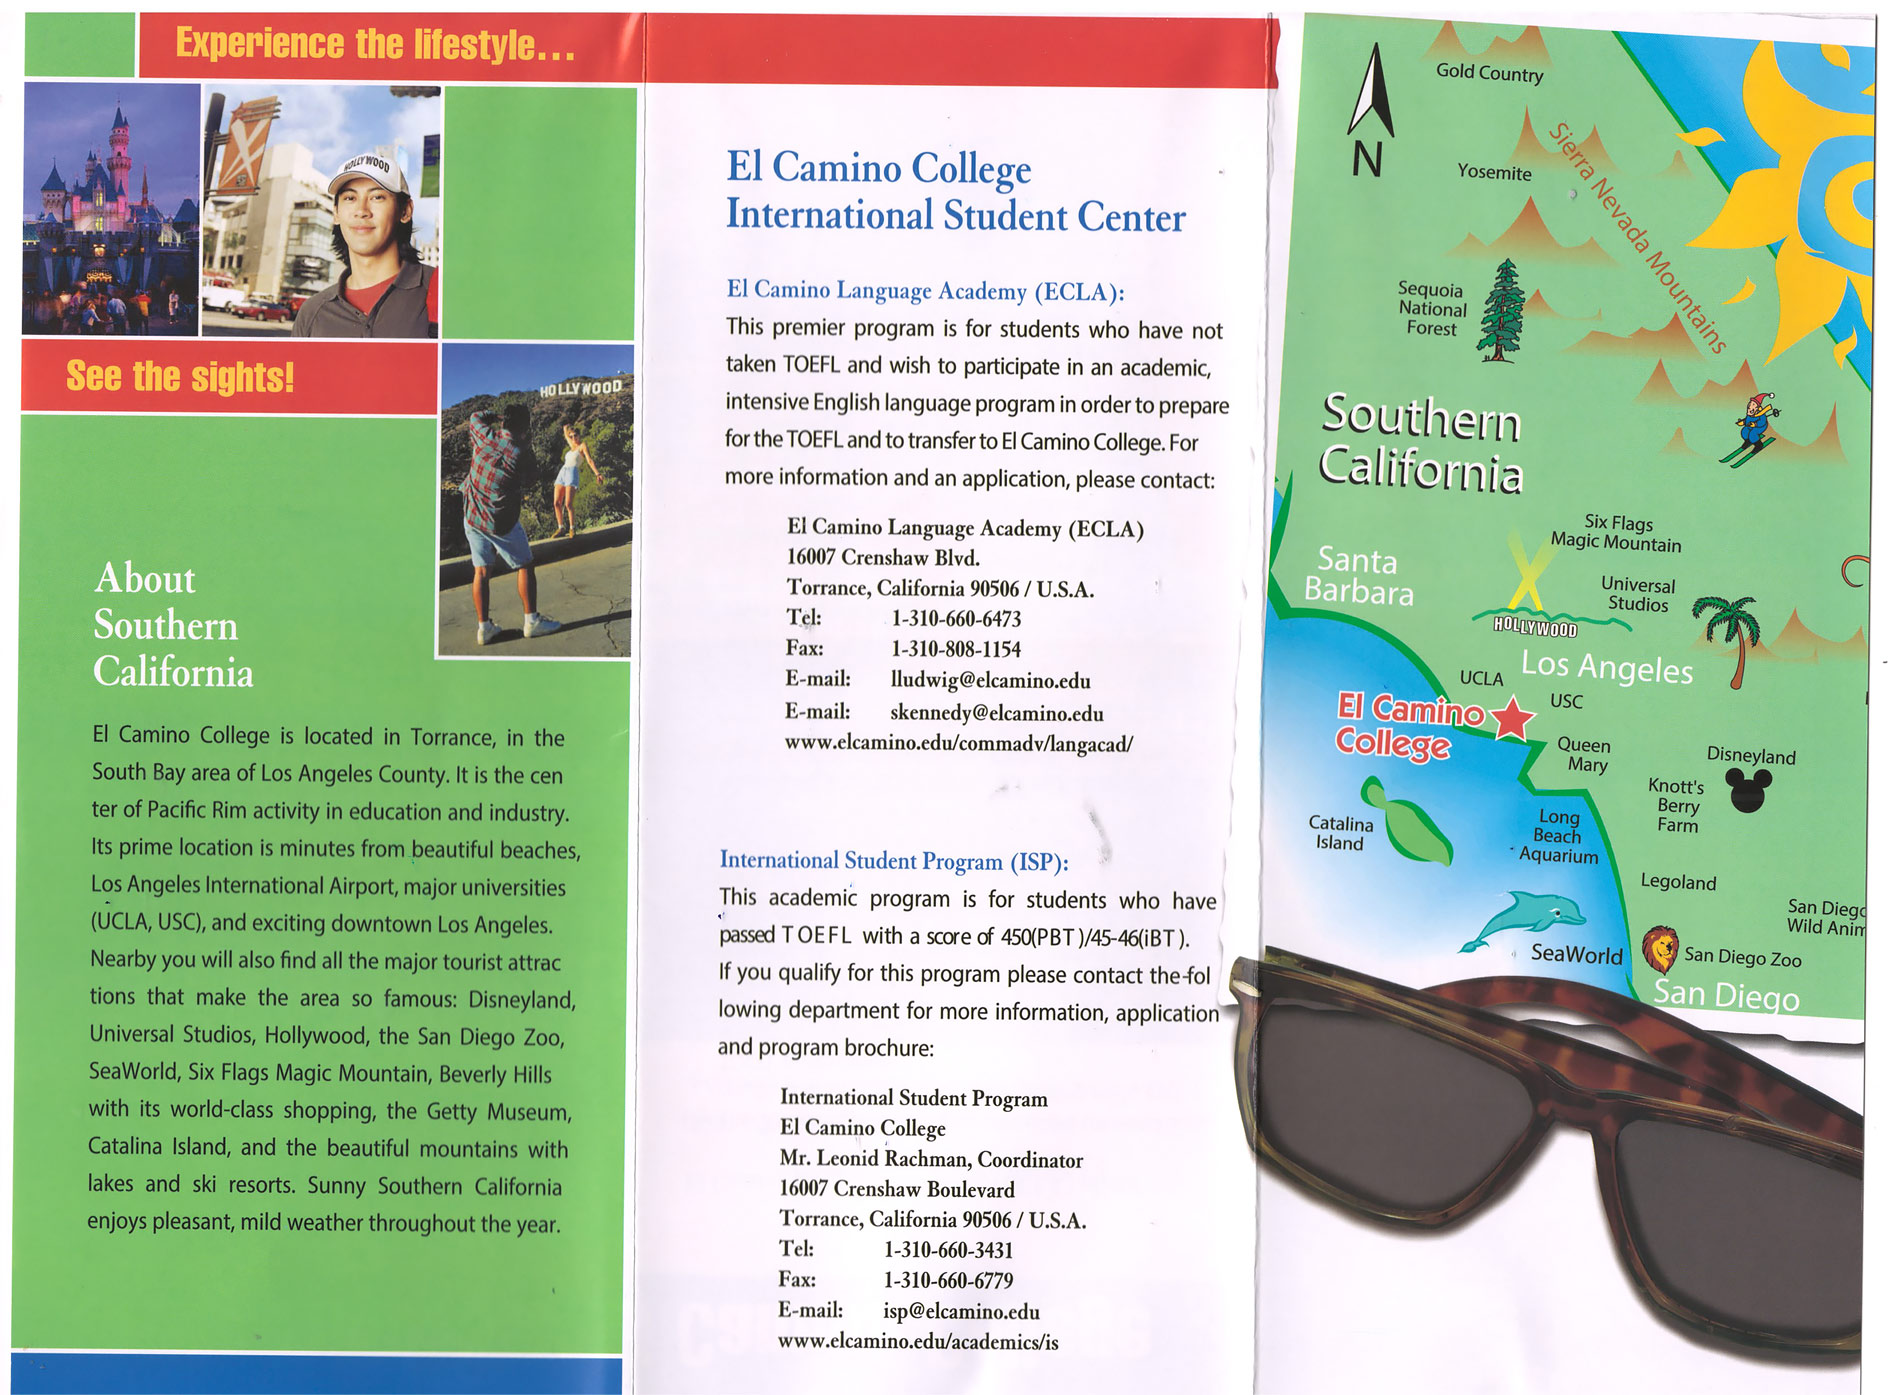 Обучение в США в колледже El Camino College